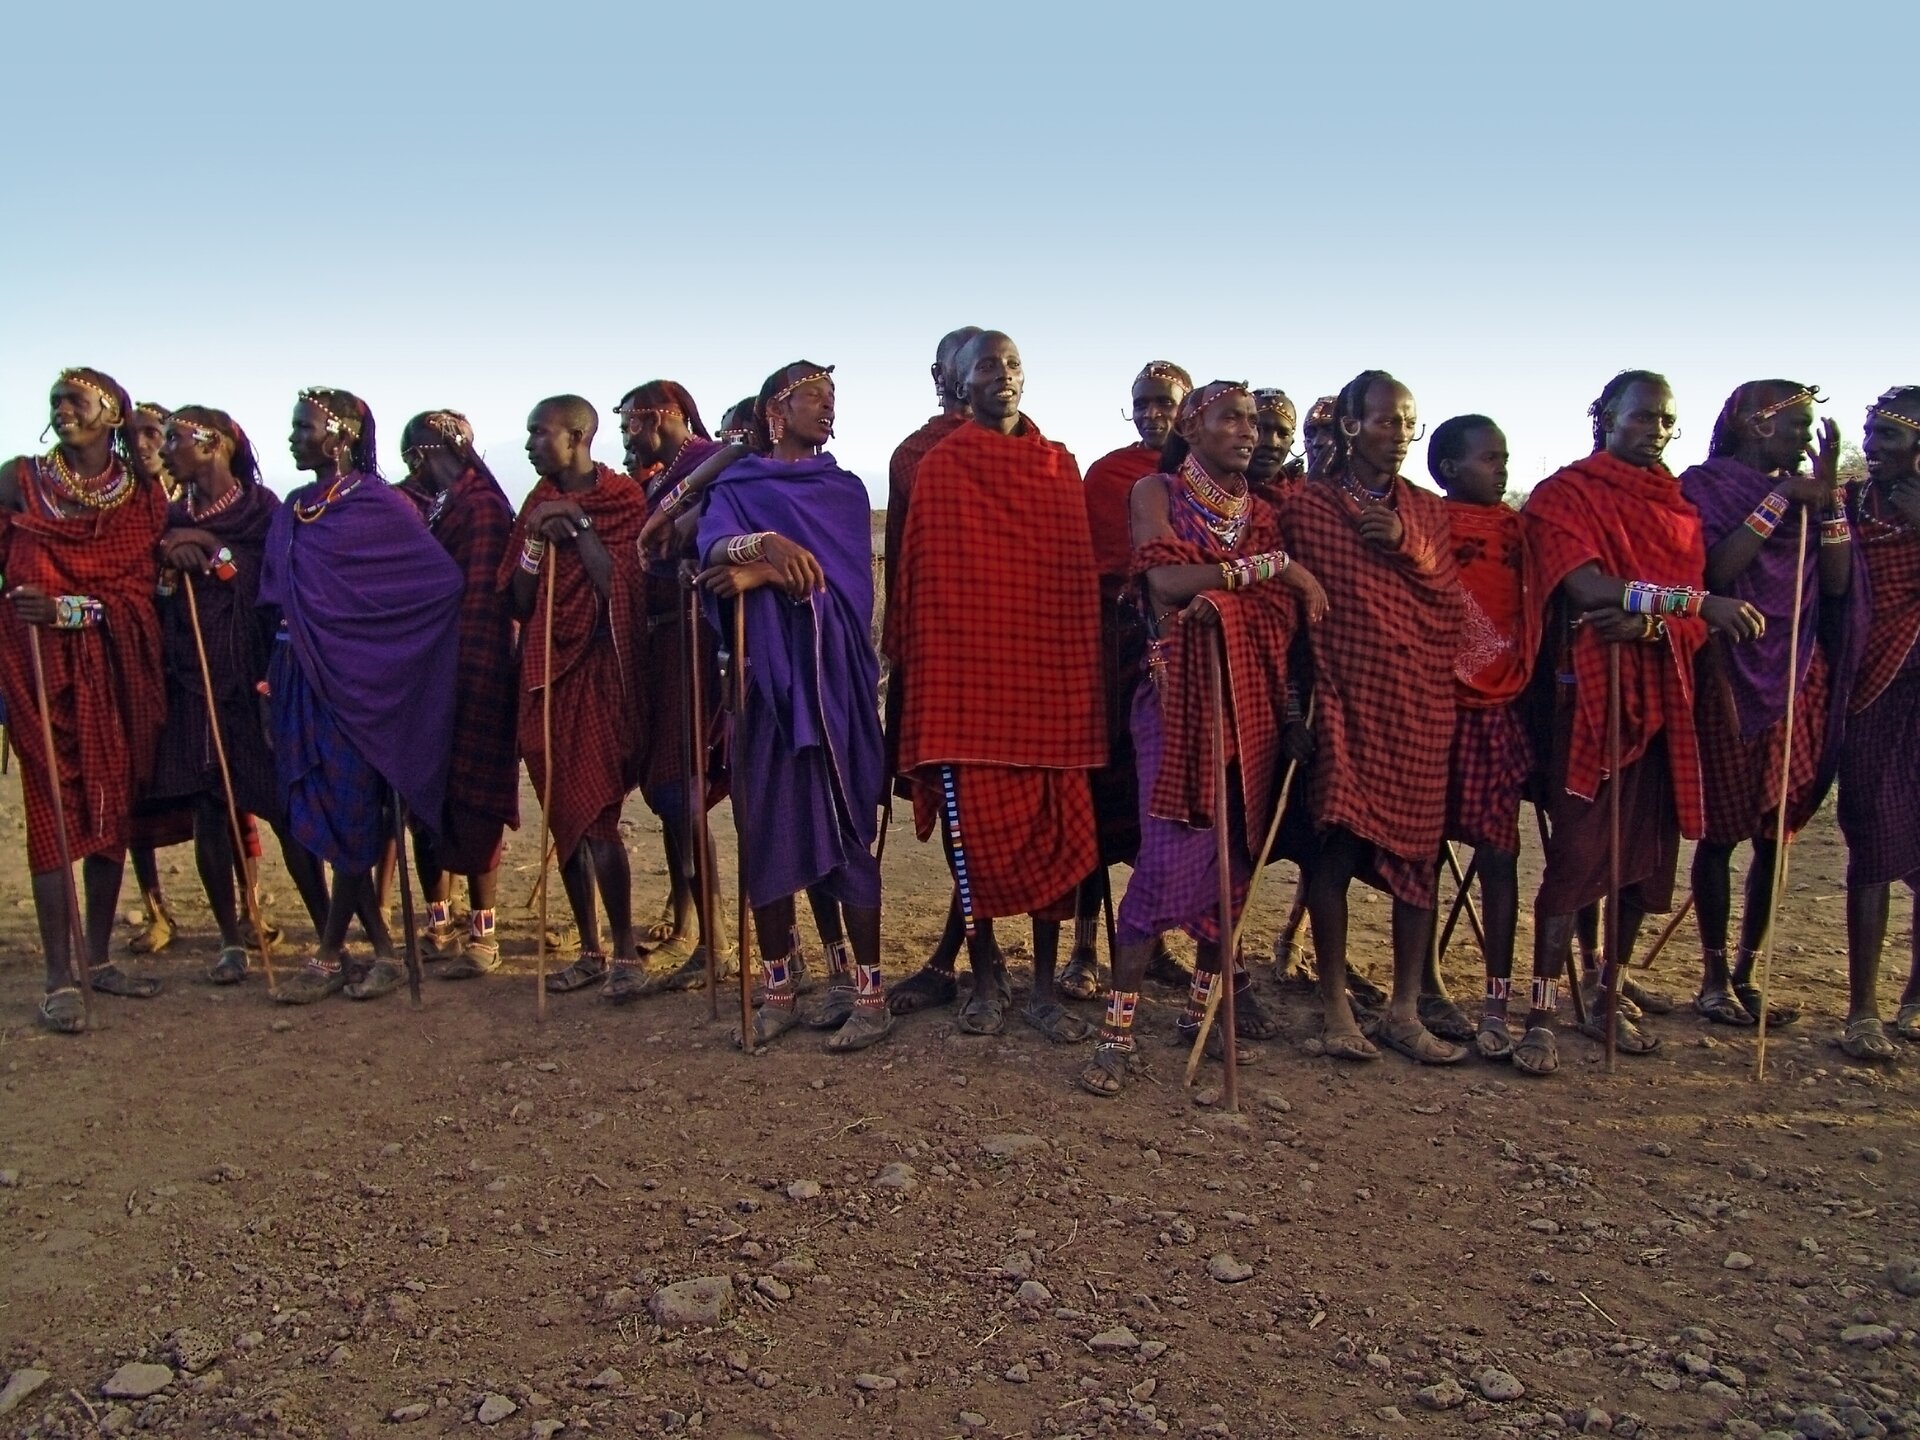 Fotografia przedstawia grupę masajskich wojowników. Mężczyźni mają ciemną skórę, są owinięci kolorowymi tkaninami – brązowymi, czerwonymi, w kratę. Wielu trzyma w rękach kije lub opiera się na nich. Mają pomalowane twarze i ozdoby na krótkich włosach. Na nogach sandały i opaski. Ludzie ci są uśmiechnięci, rozmawiają ze sobą.